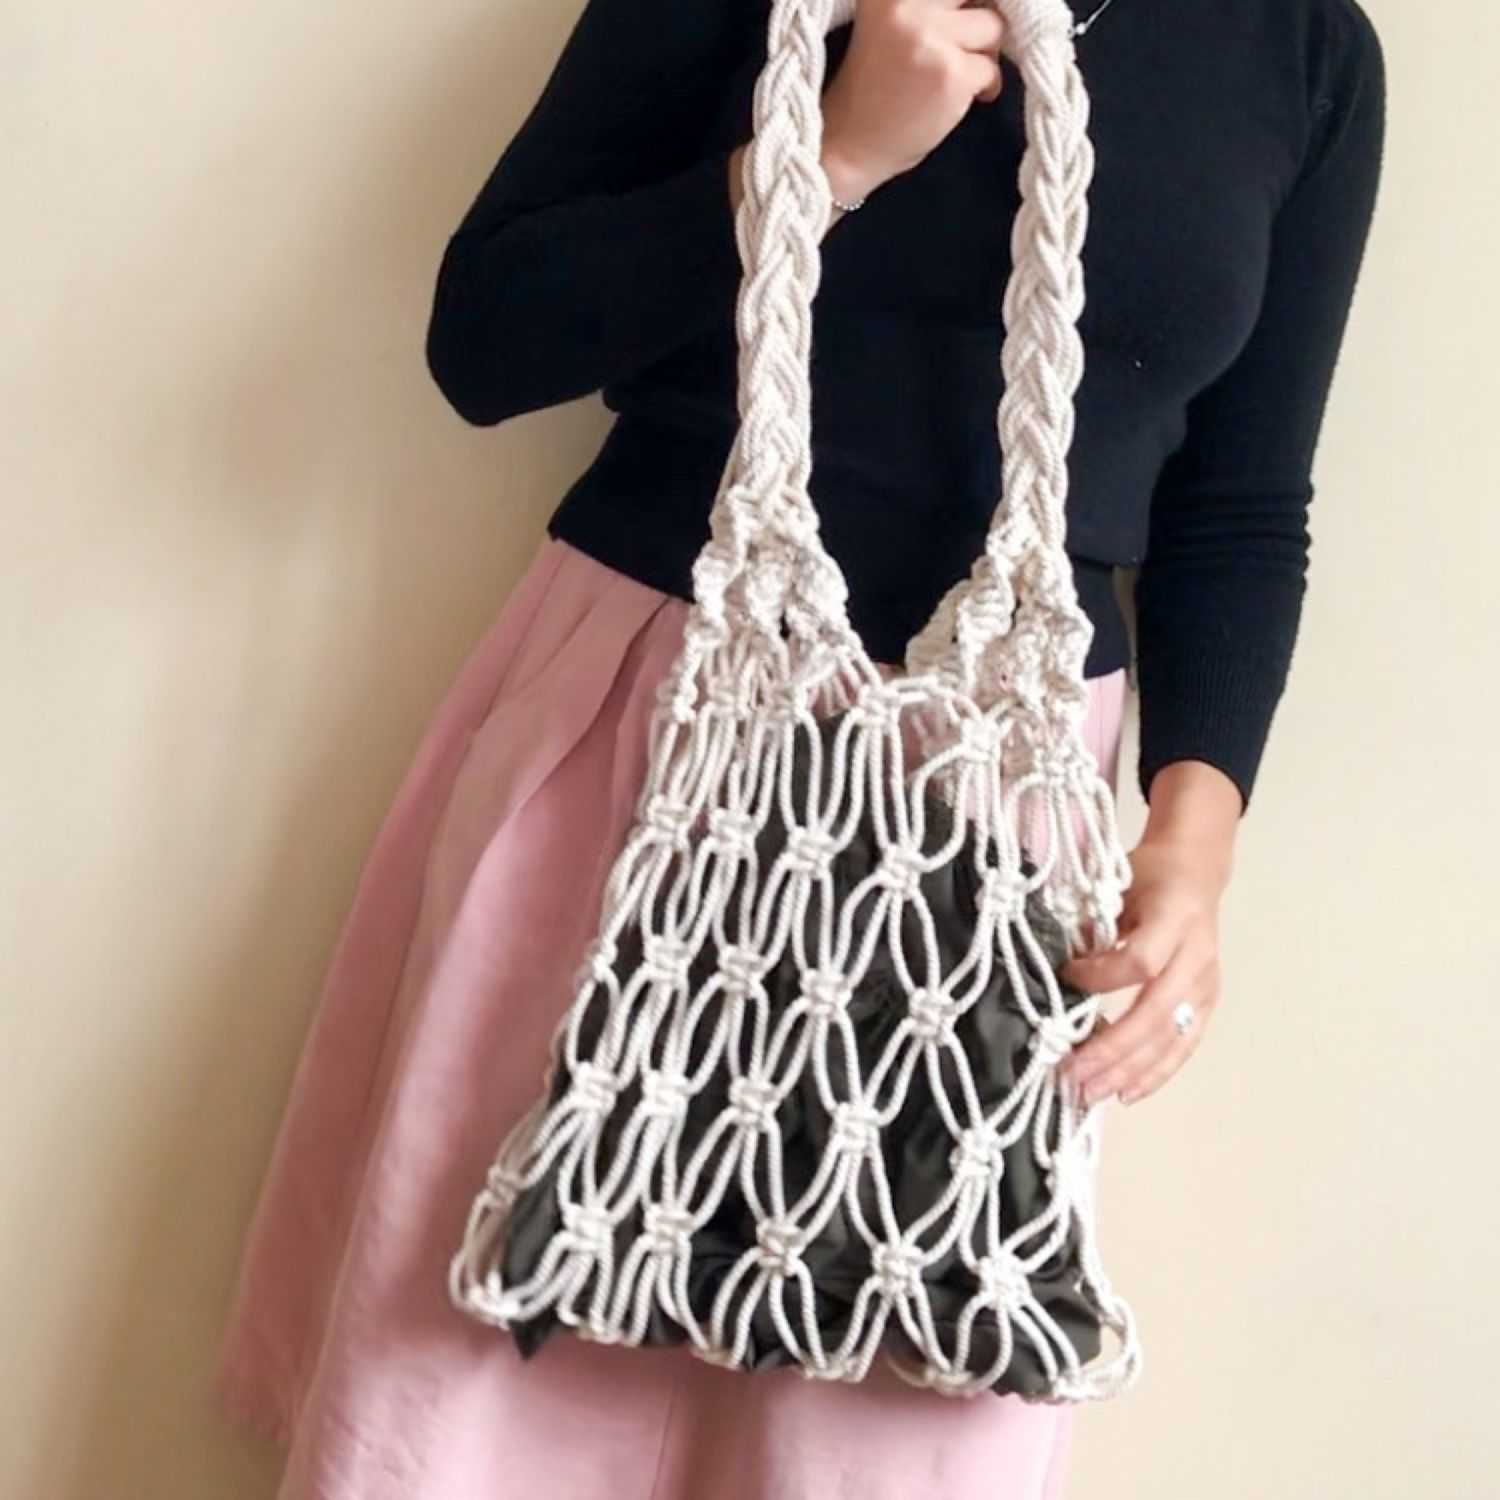 Схемы вязания красивых стильных сумок крючком из трикотажной пряжи и других материалов Как связать сумку - ракушку Описание вязания сумки из шнура